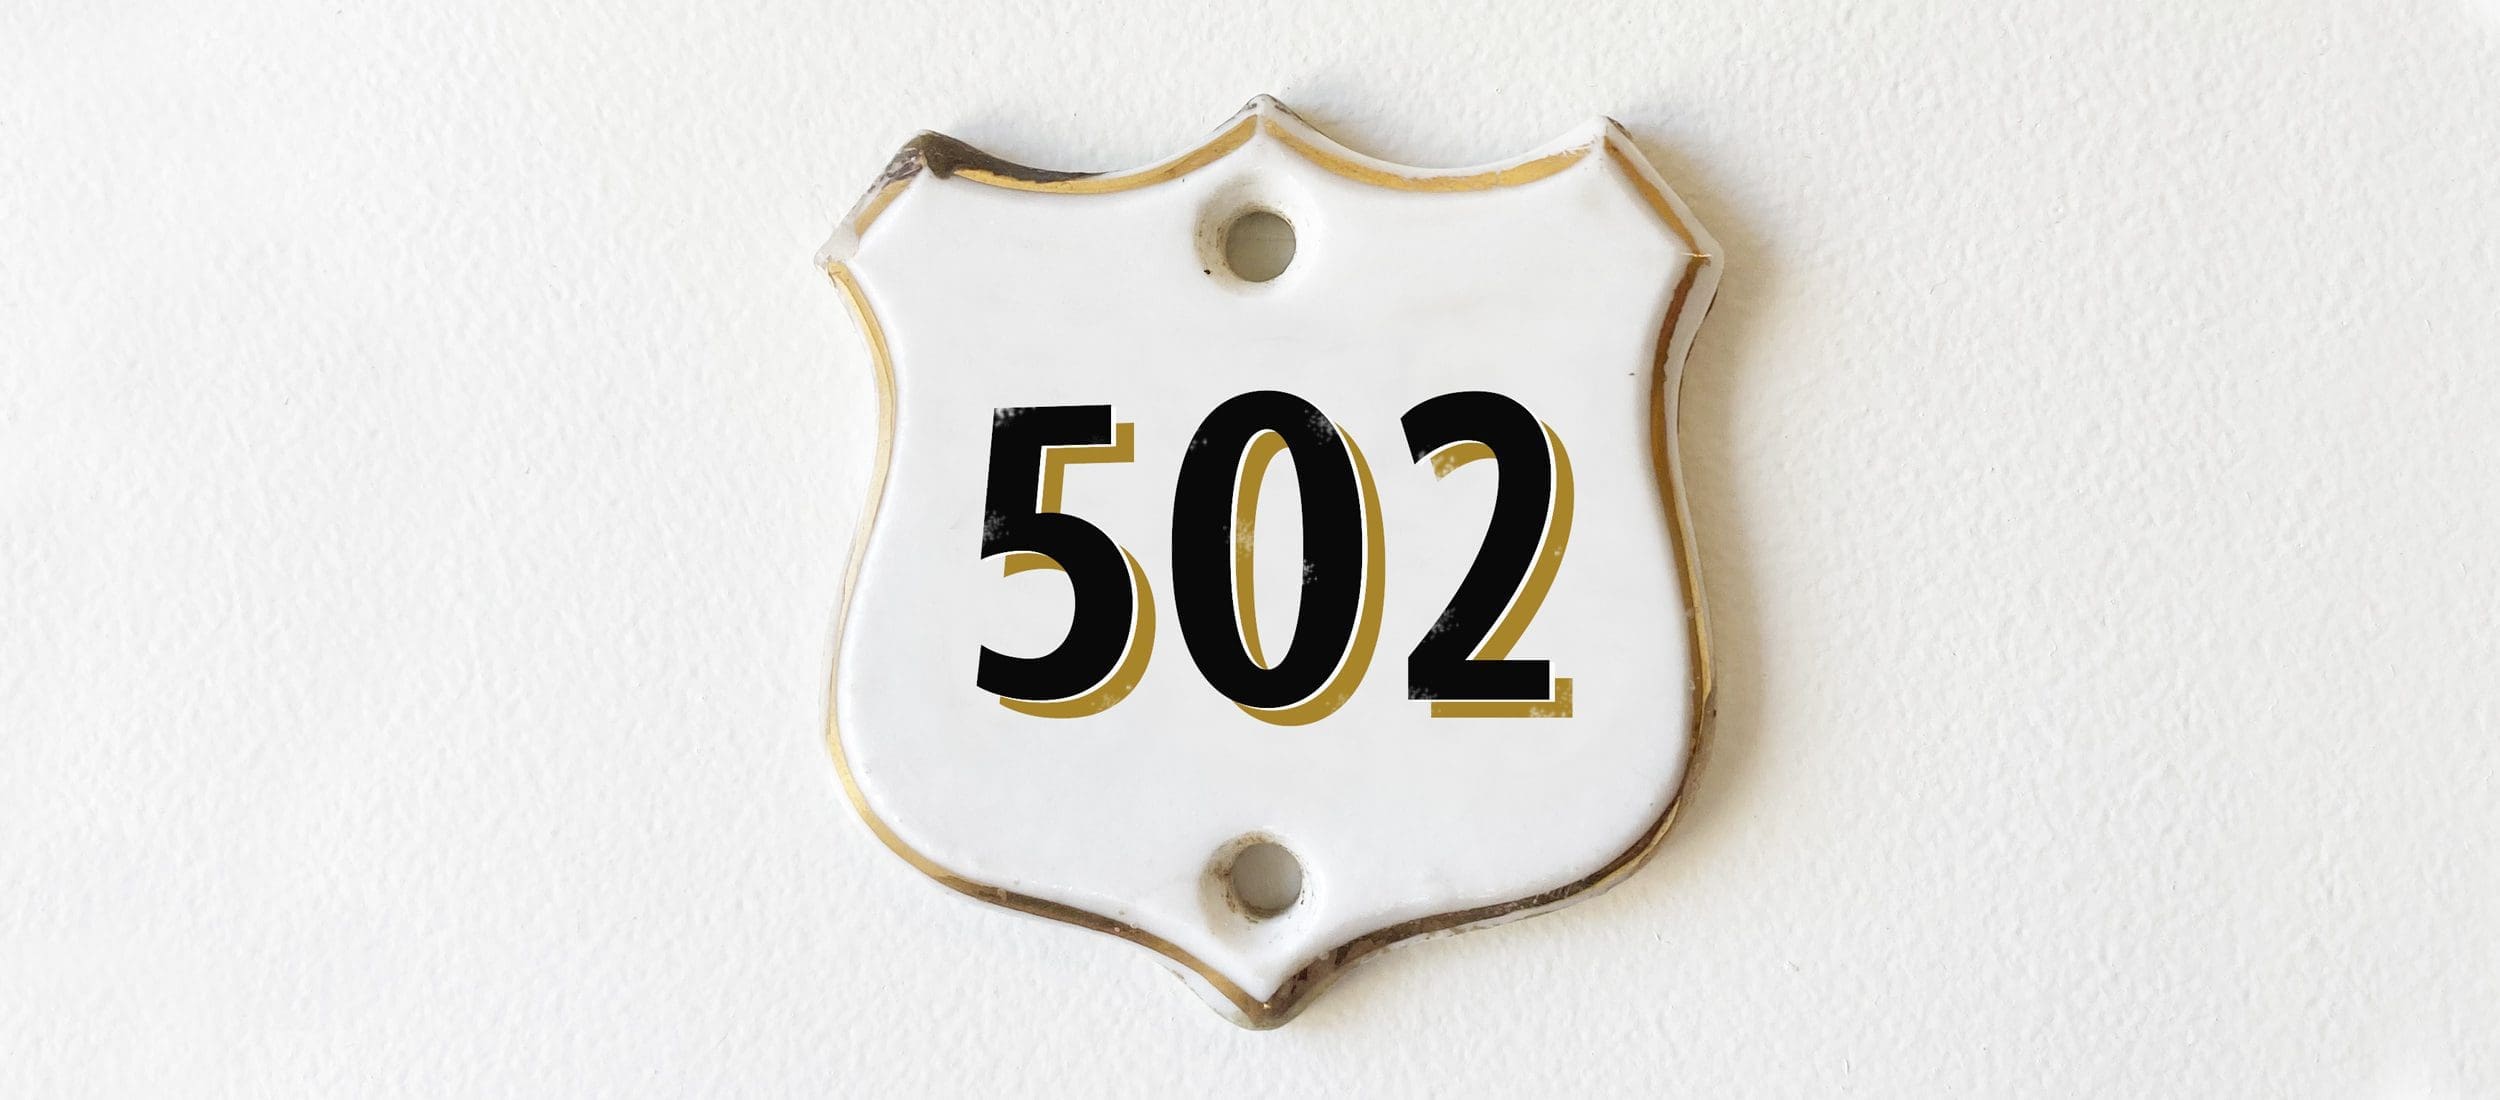 Room 502 Plate